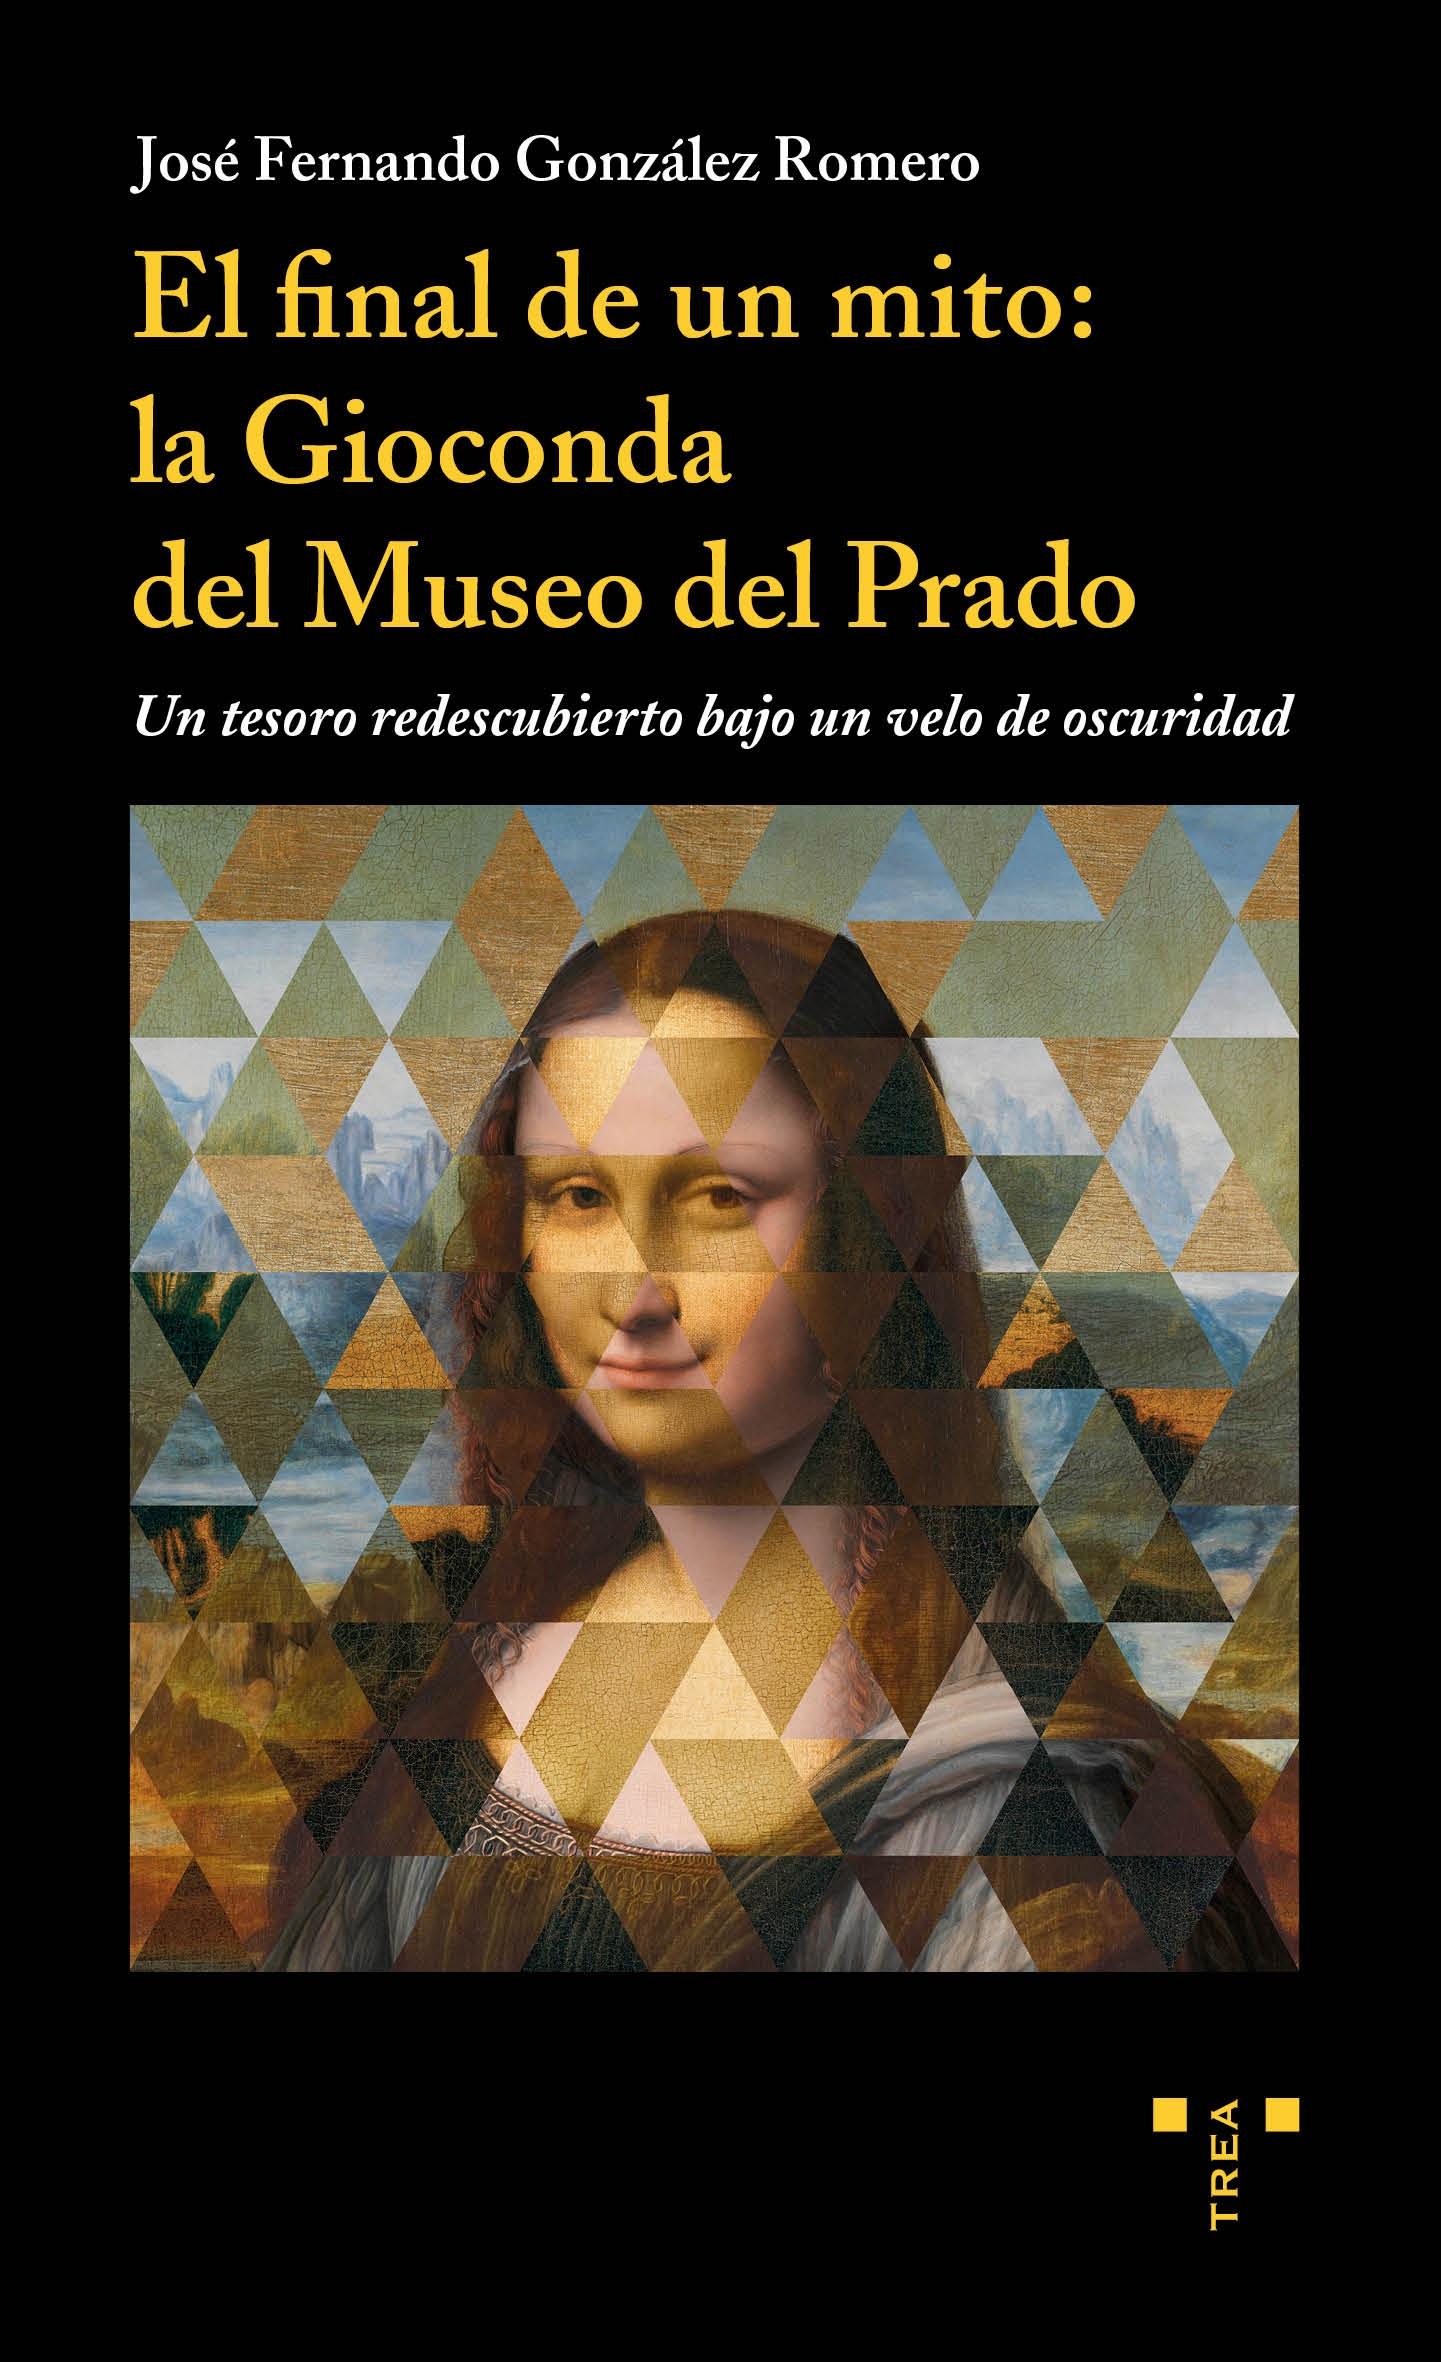 El final de un mito: la Gioconda del Museo del Prado "Un tesoro re descubierto bajo un velo de oscuridad"